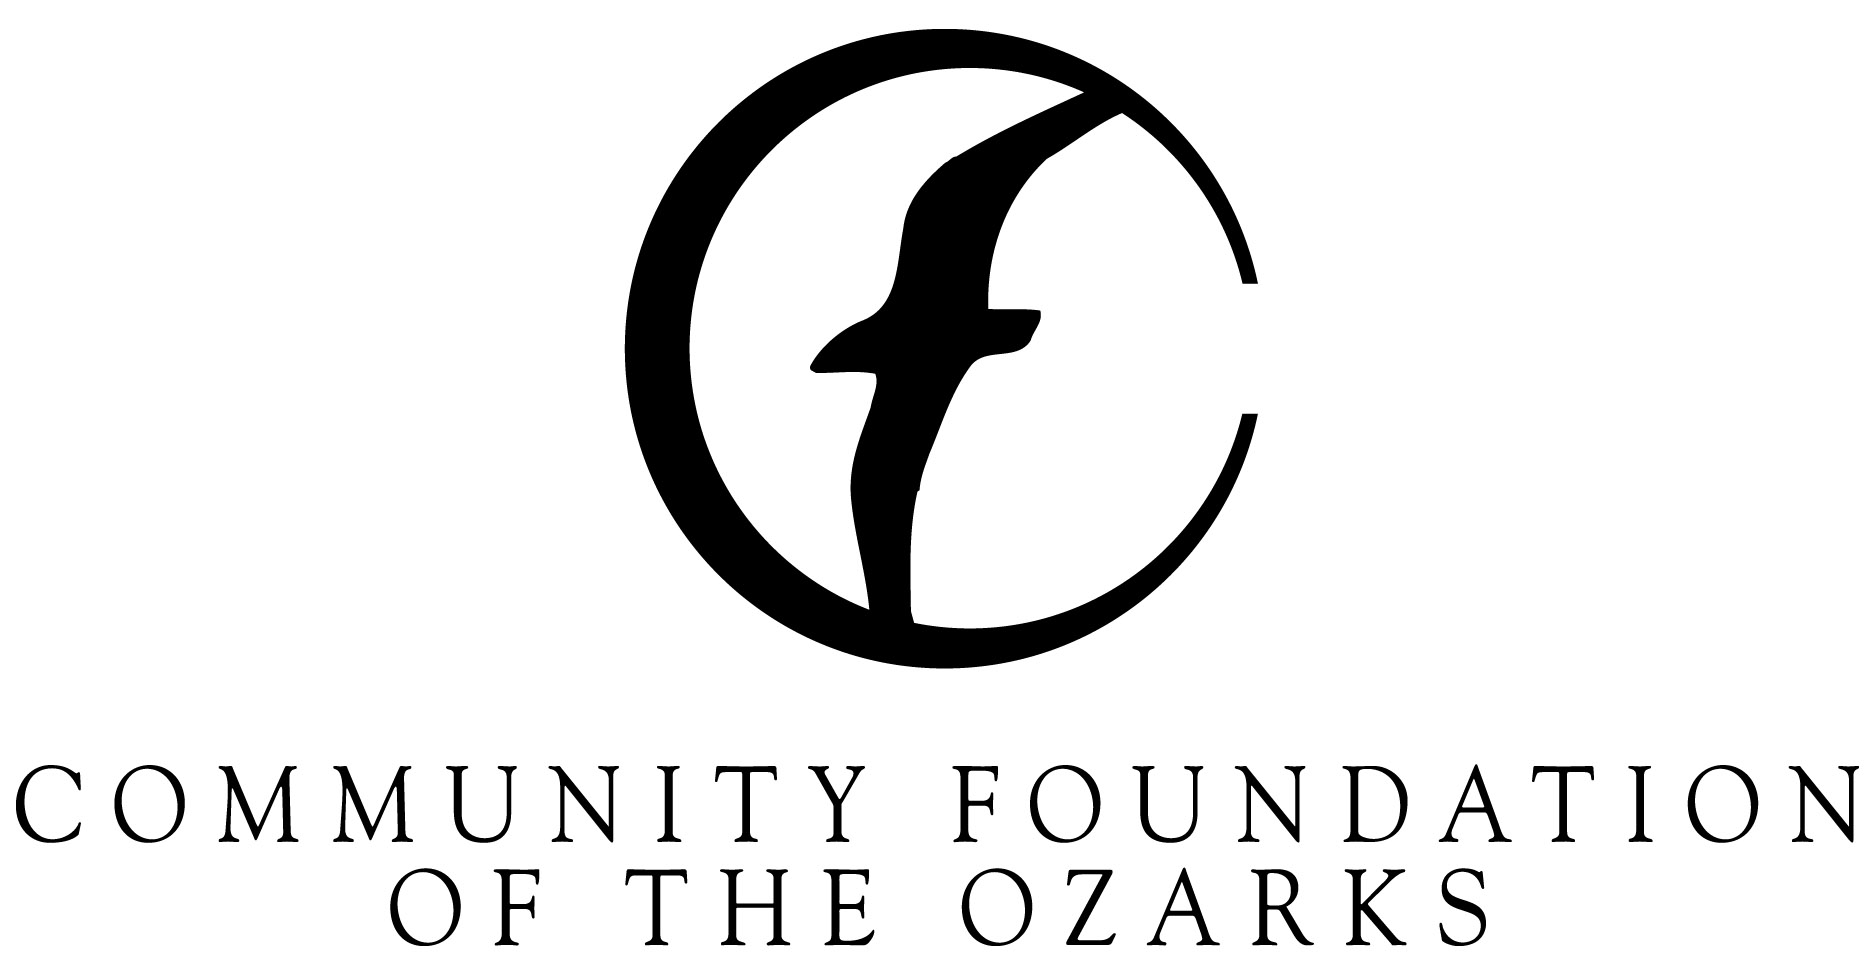 CFO logo